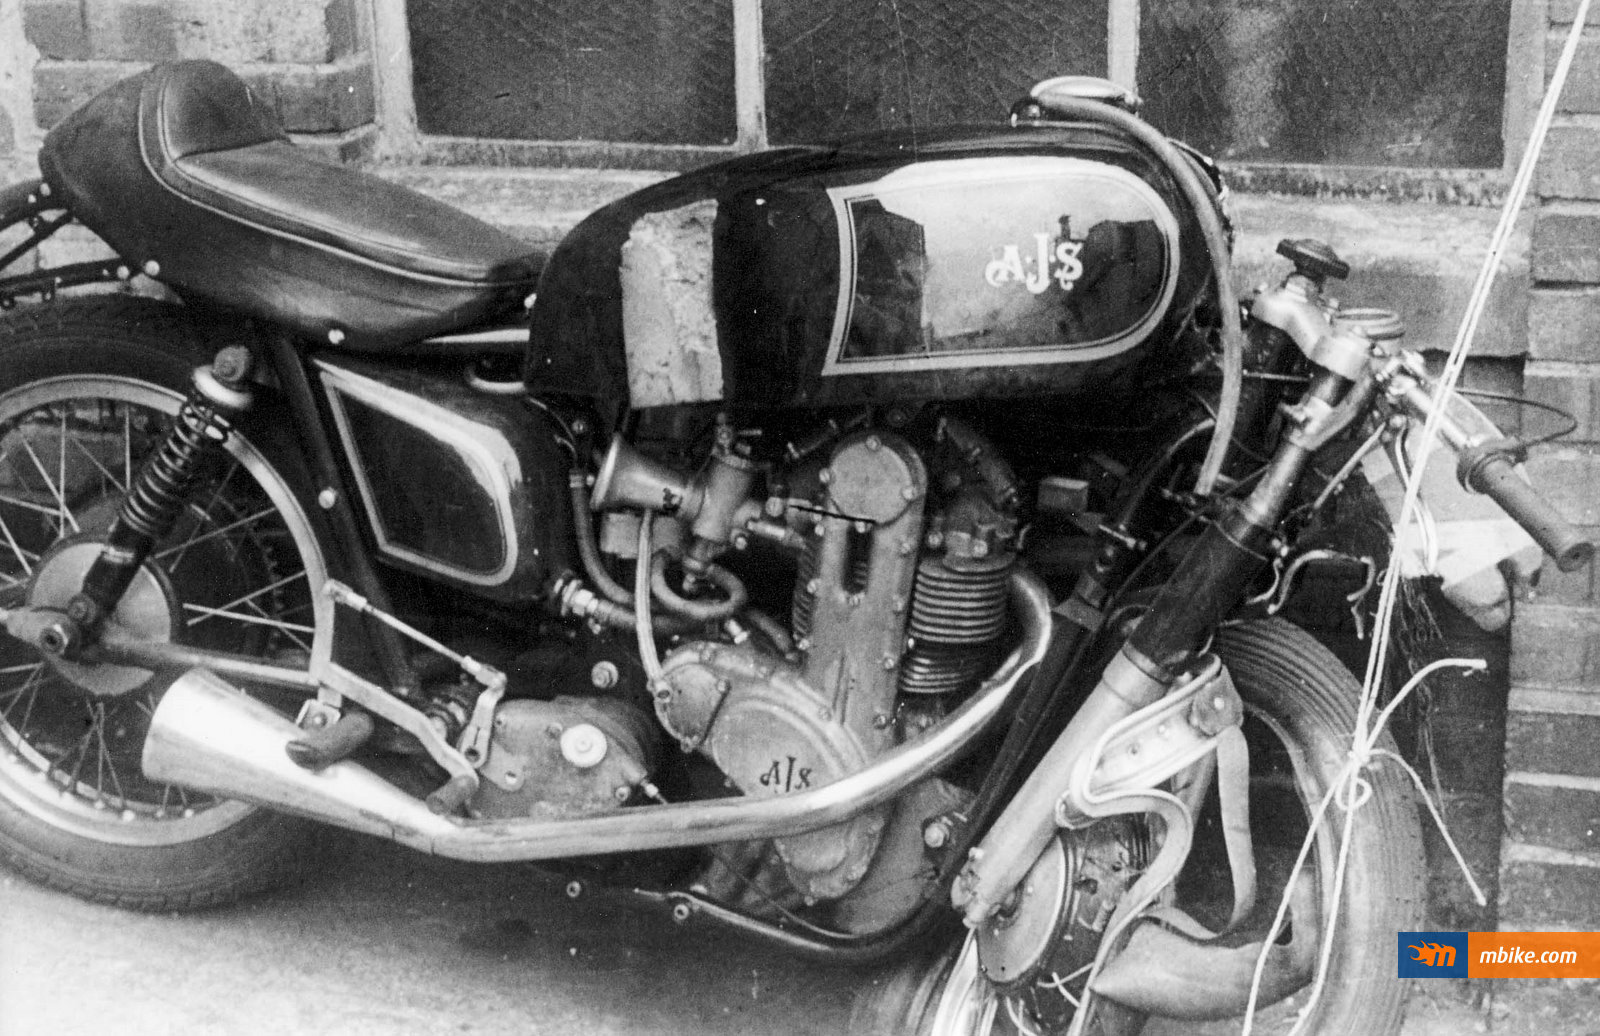 1955 7R AJS after a crash at IOM TT